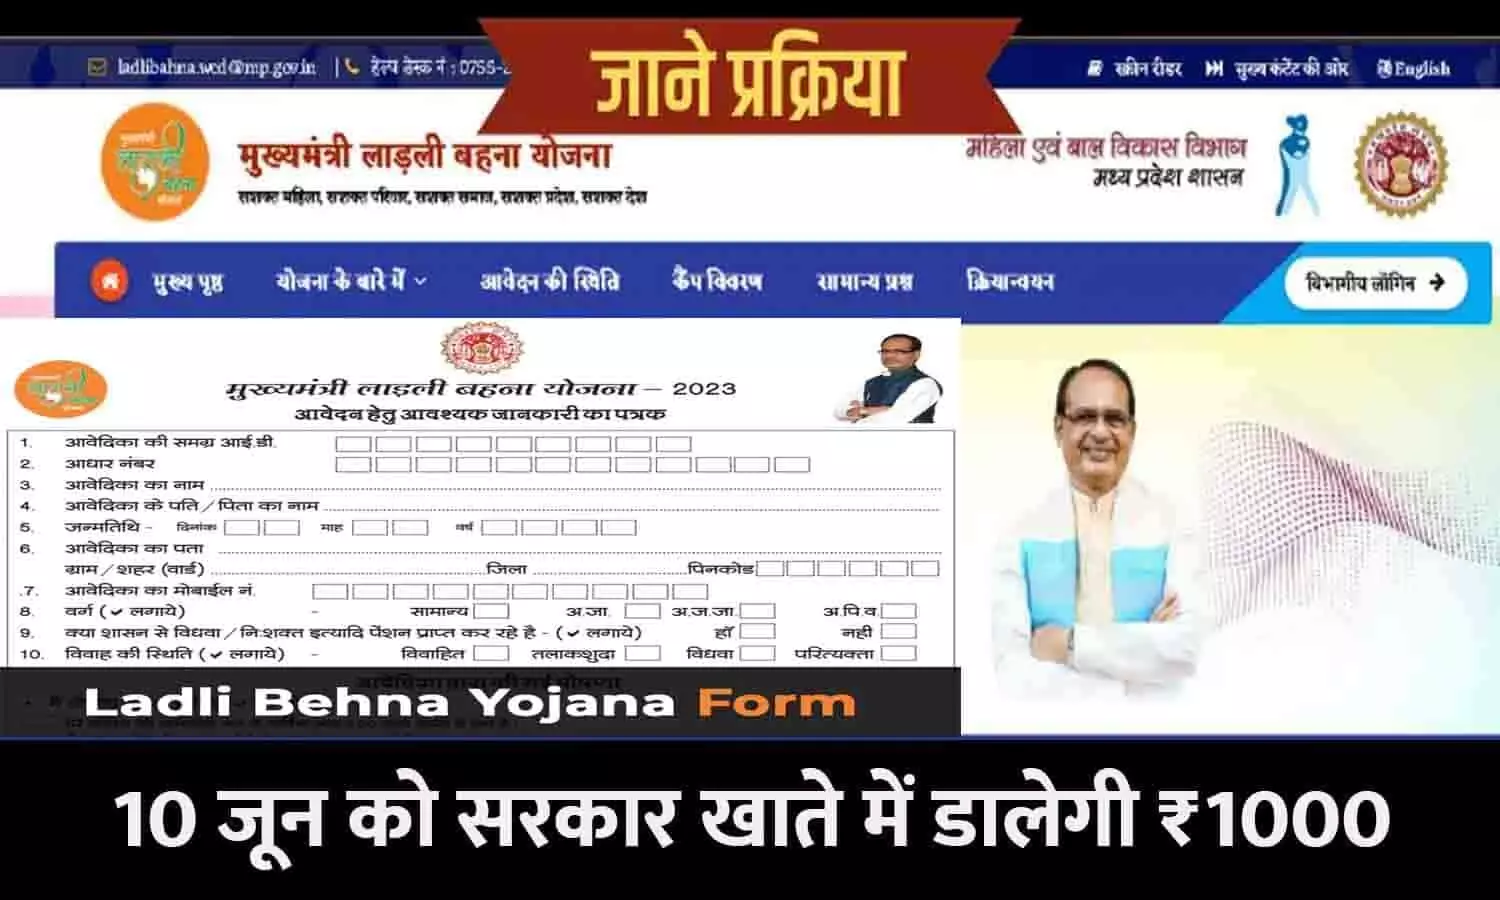 MP Ladli Bahna Yojana Money Transfer Account: 10 जून को सरकार खाते में डालेगी ₹1000, 1-1 रूपए हुए ट्रांसफर, खाते को करे आधार से लिंक